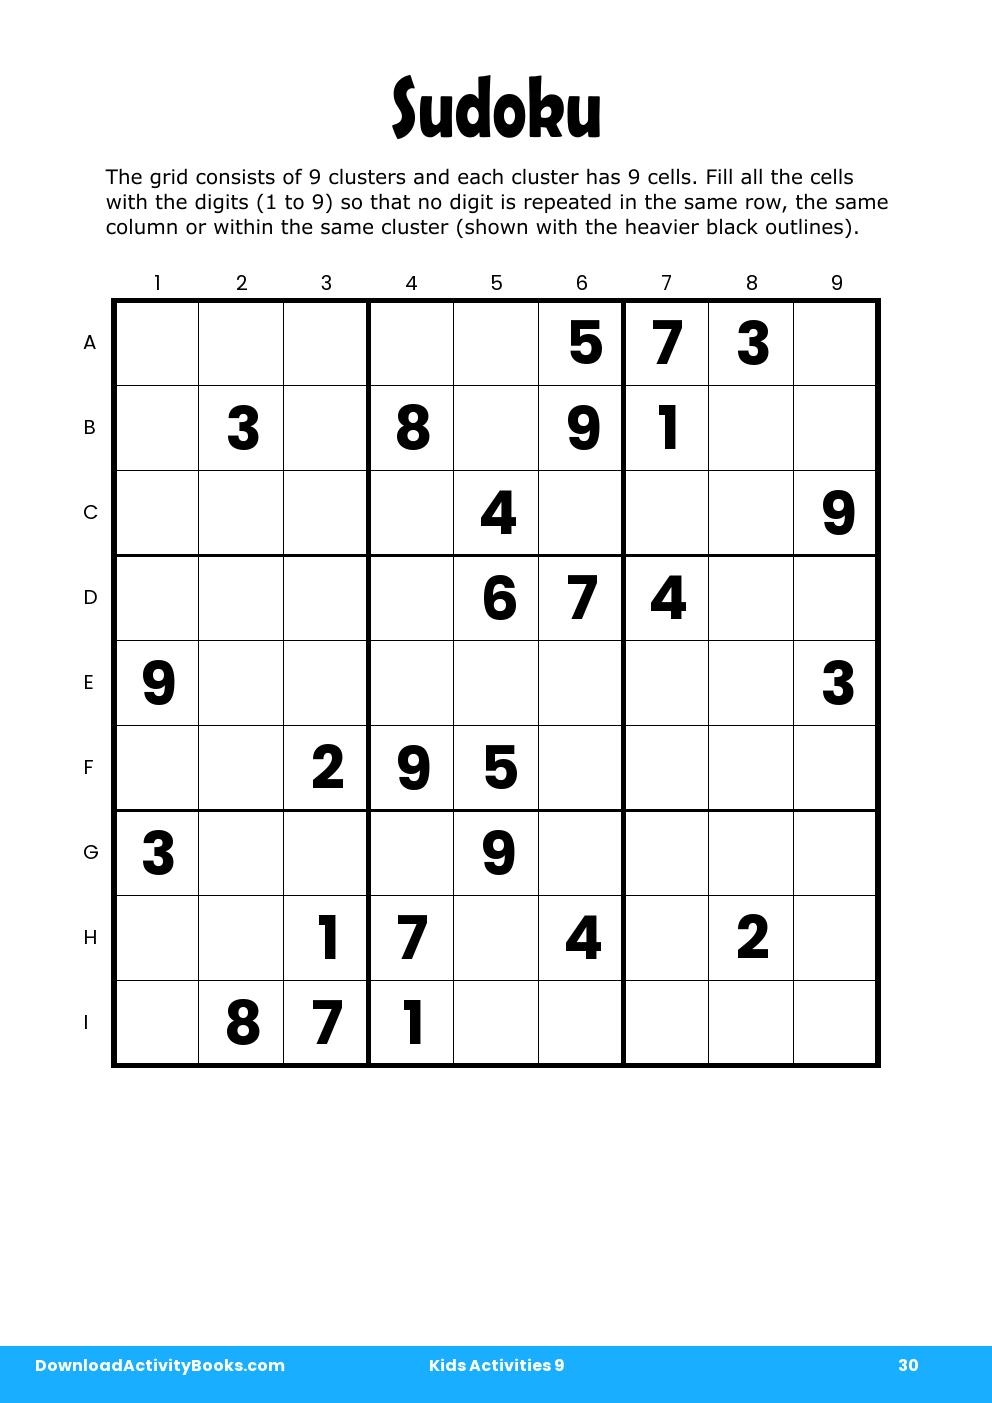 Sudoku in Kids Activities 9